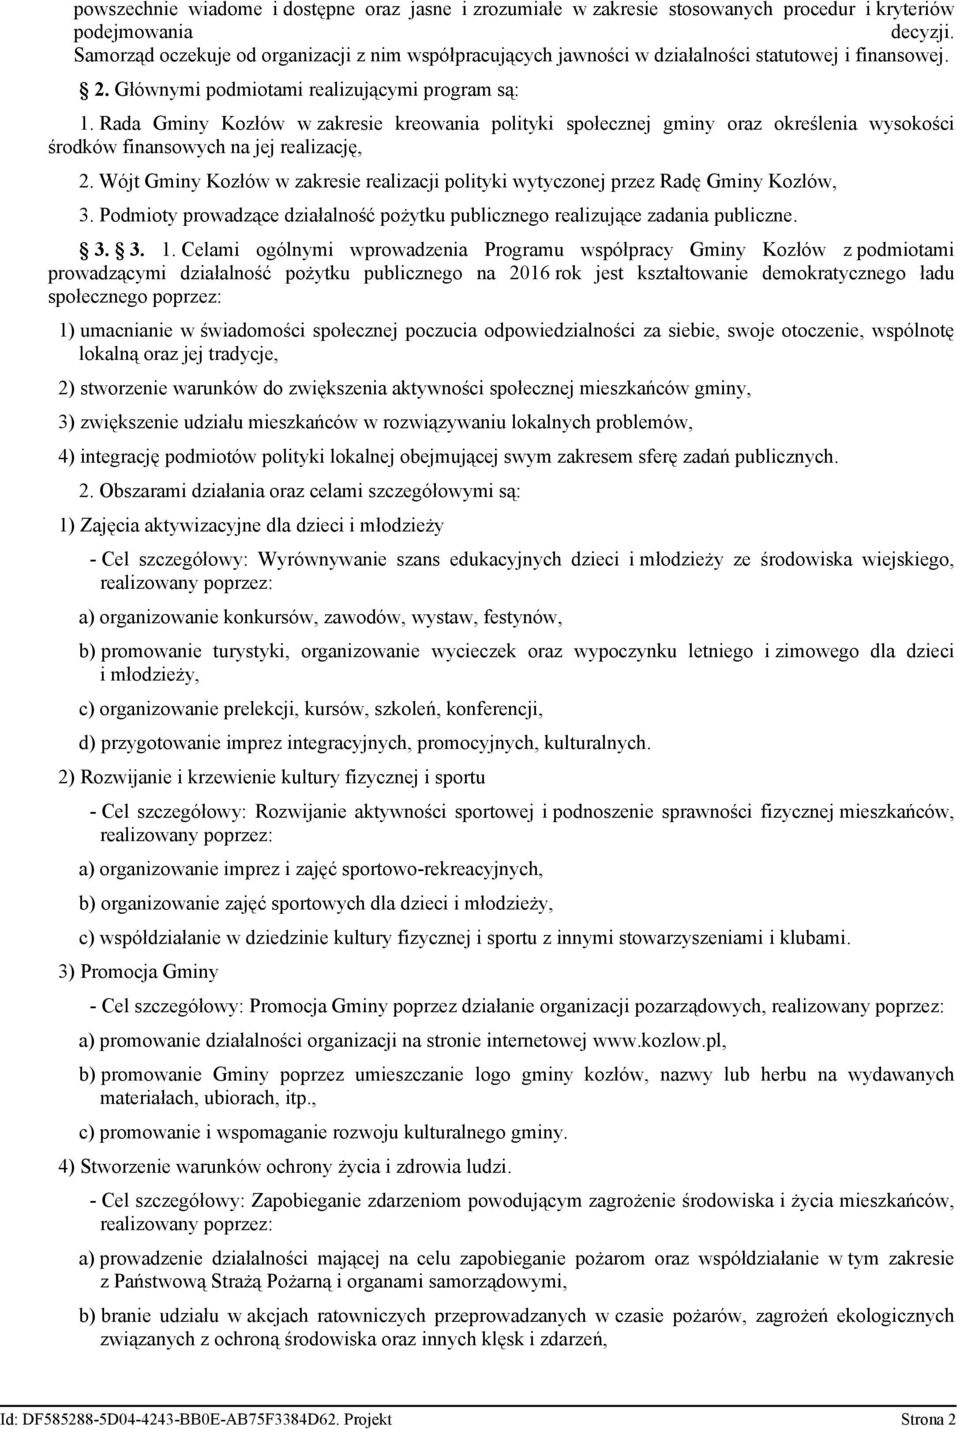 Rada Gminy Kozłów w zakresie kreowania polityki społecznej gminy oraz określenia wysokości środków finansowych na jej realizację, 2.